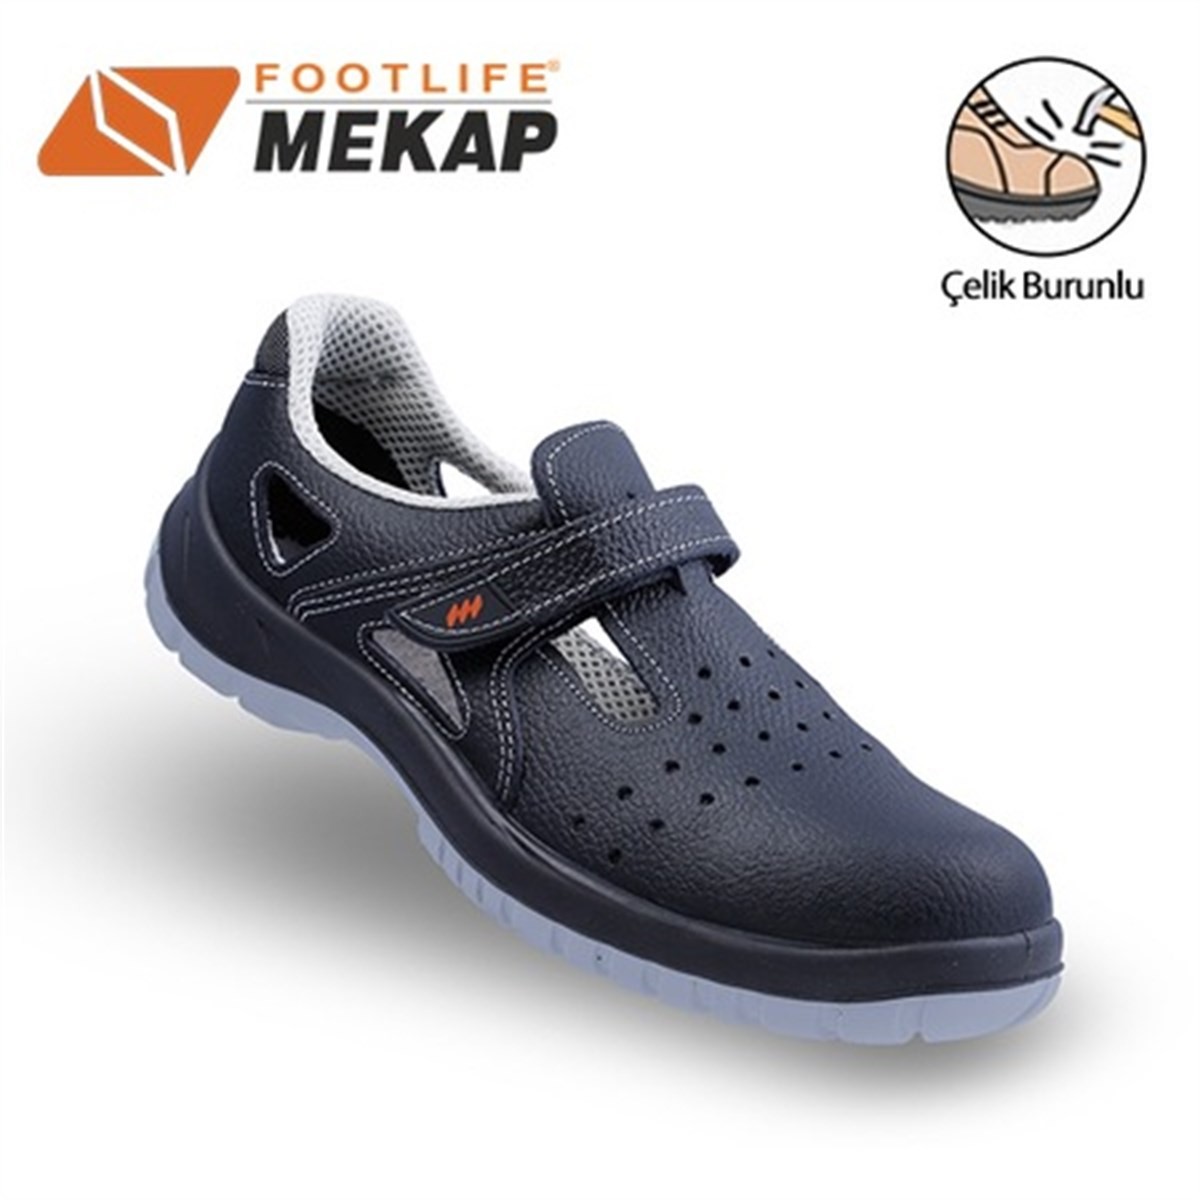 MEKAP 234 R S1 SRC Sandalet Çelik Burunlu İş Ayakkabısı